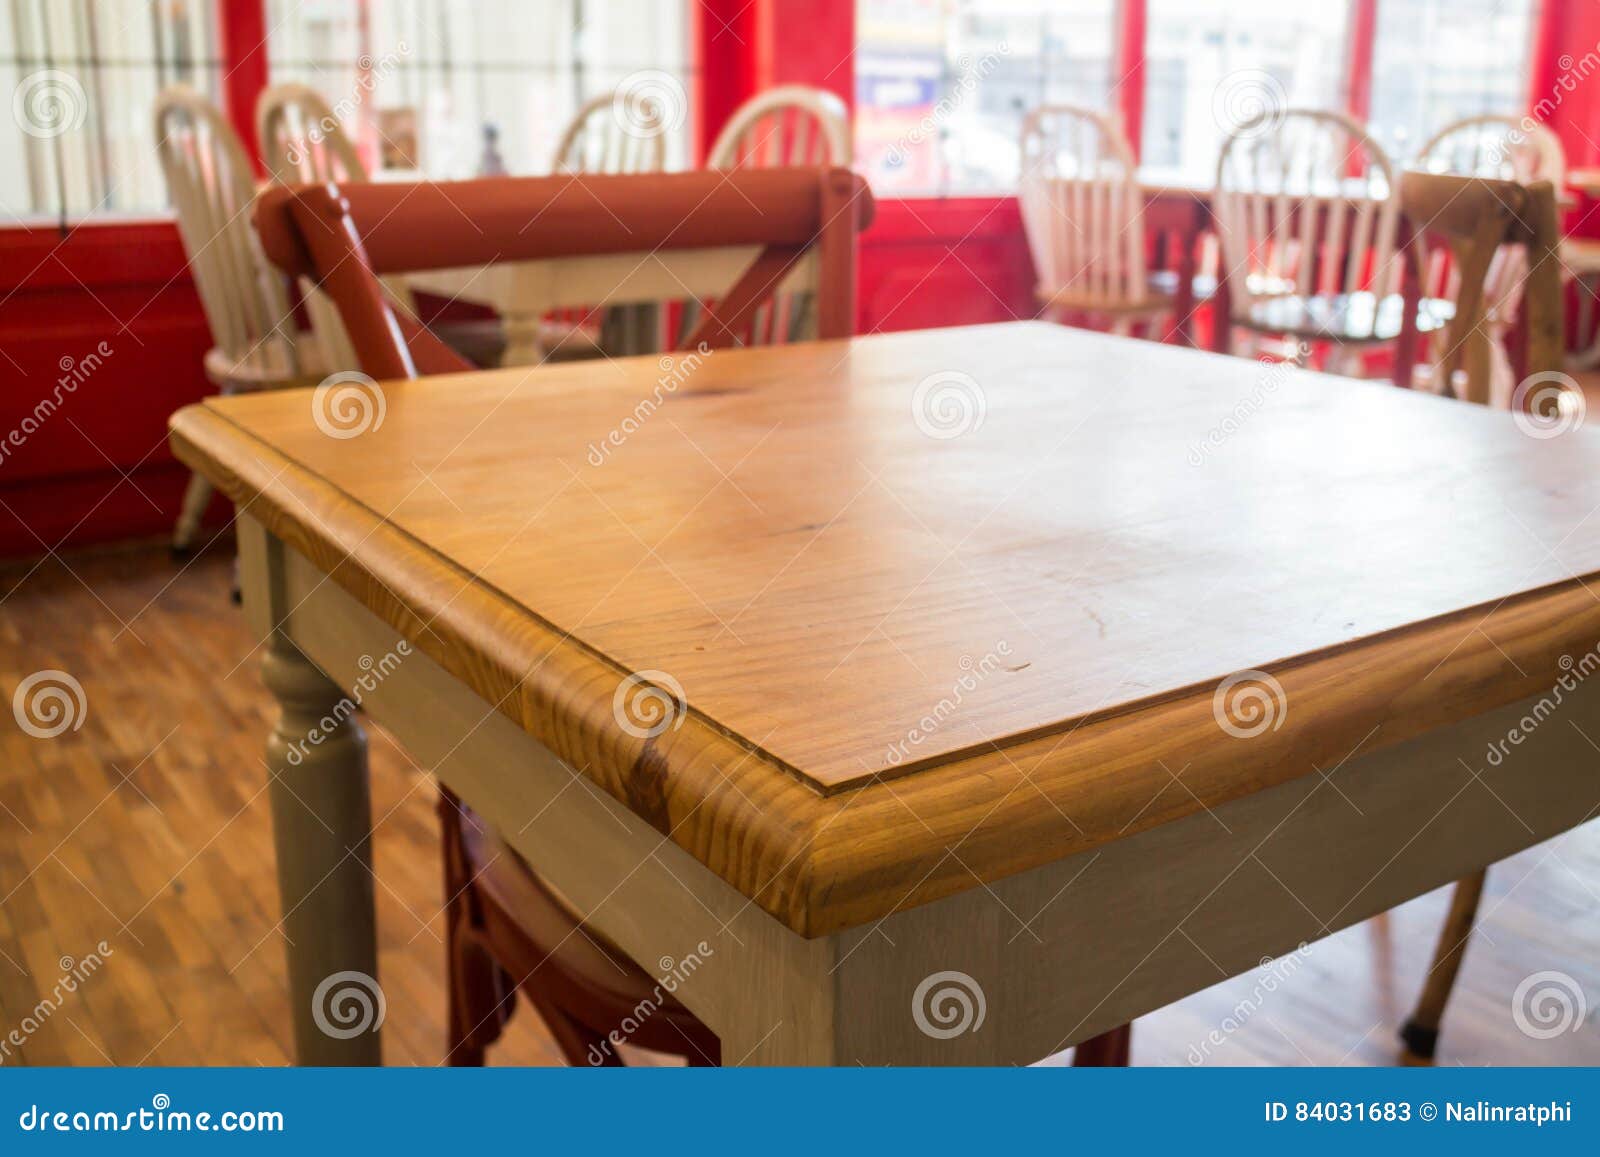 Table Et Chaise De Cuisine En Bois De Vintage Image Stock